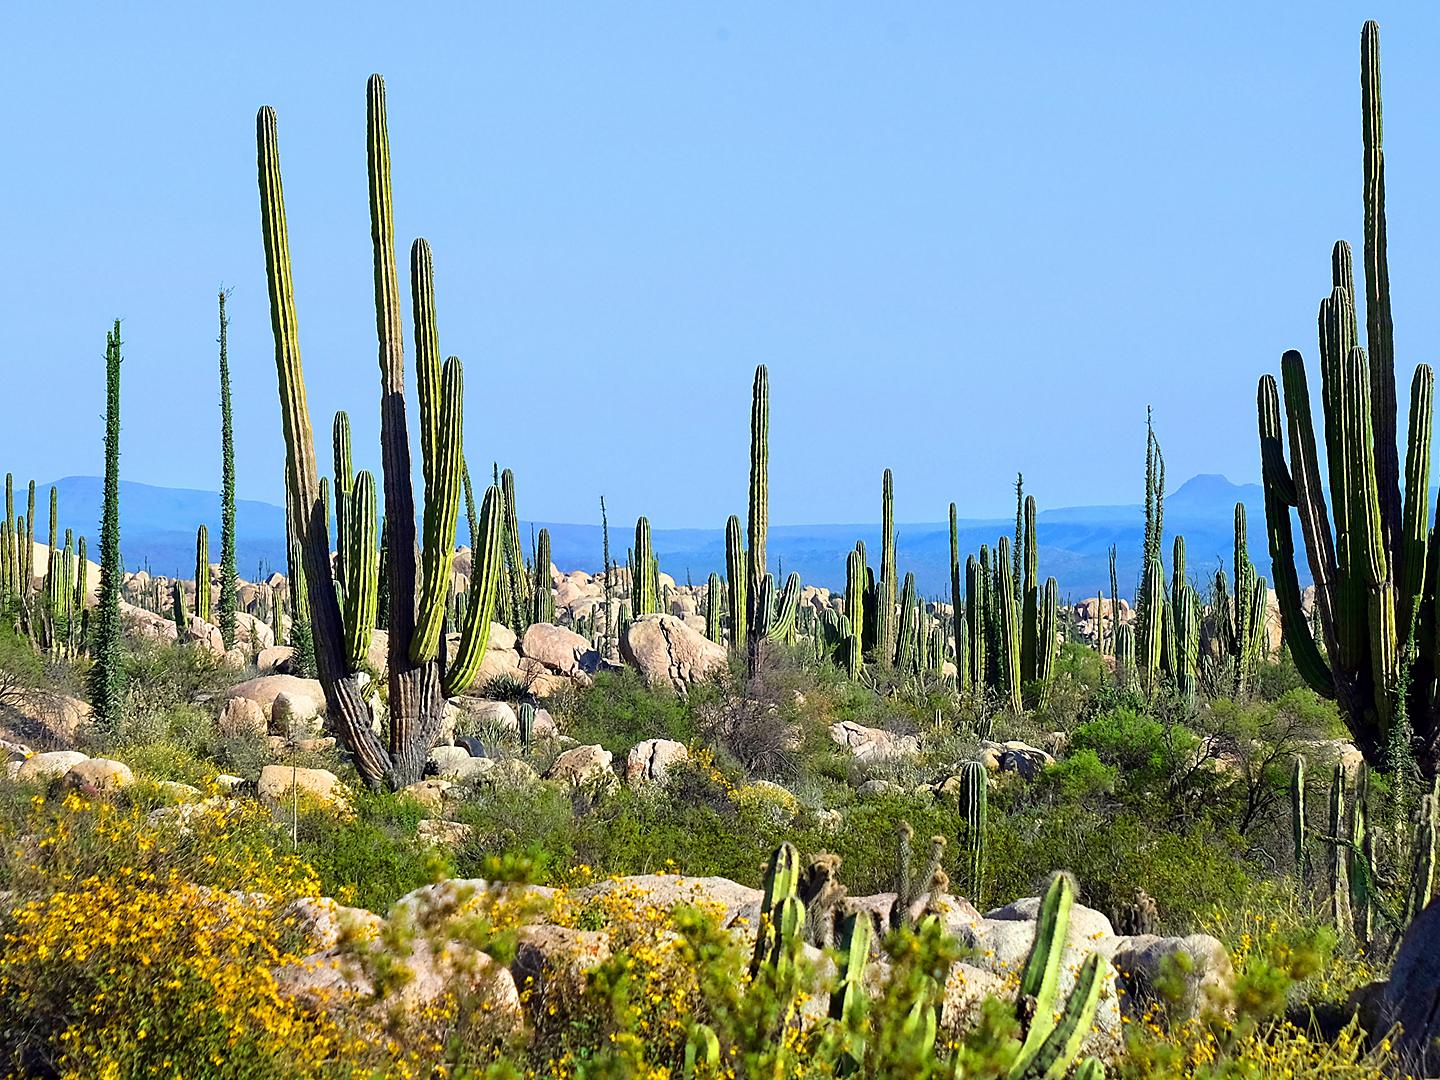 Ensenada Mexico Cactus Valley Baja California